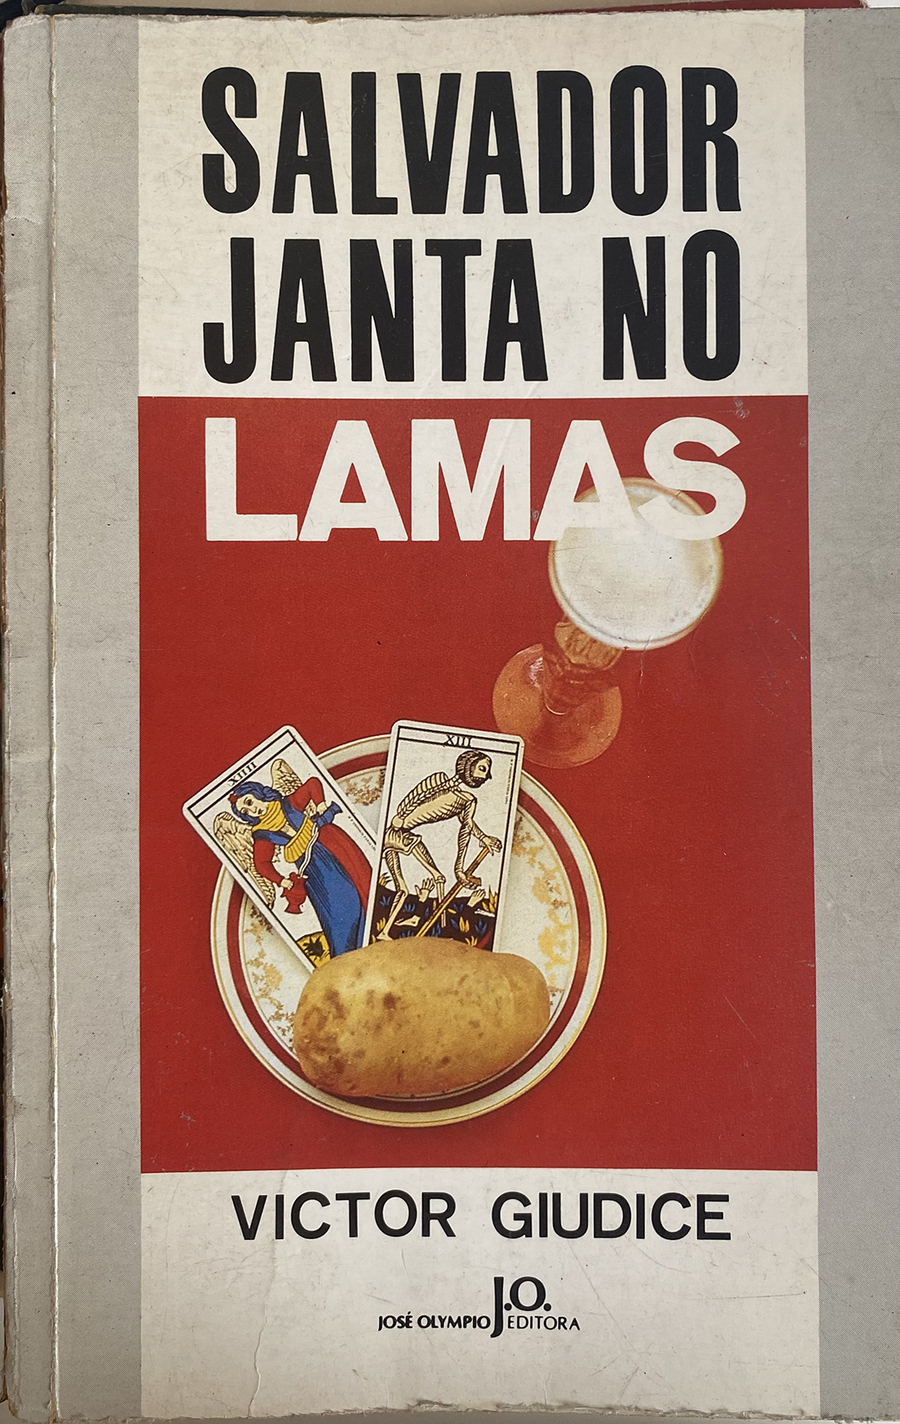 Capa do livro 'Salvador janta no Lamas'